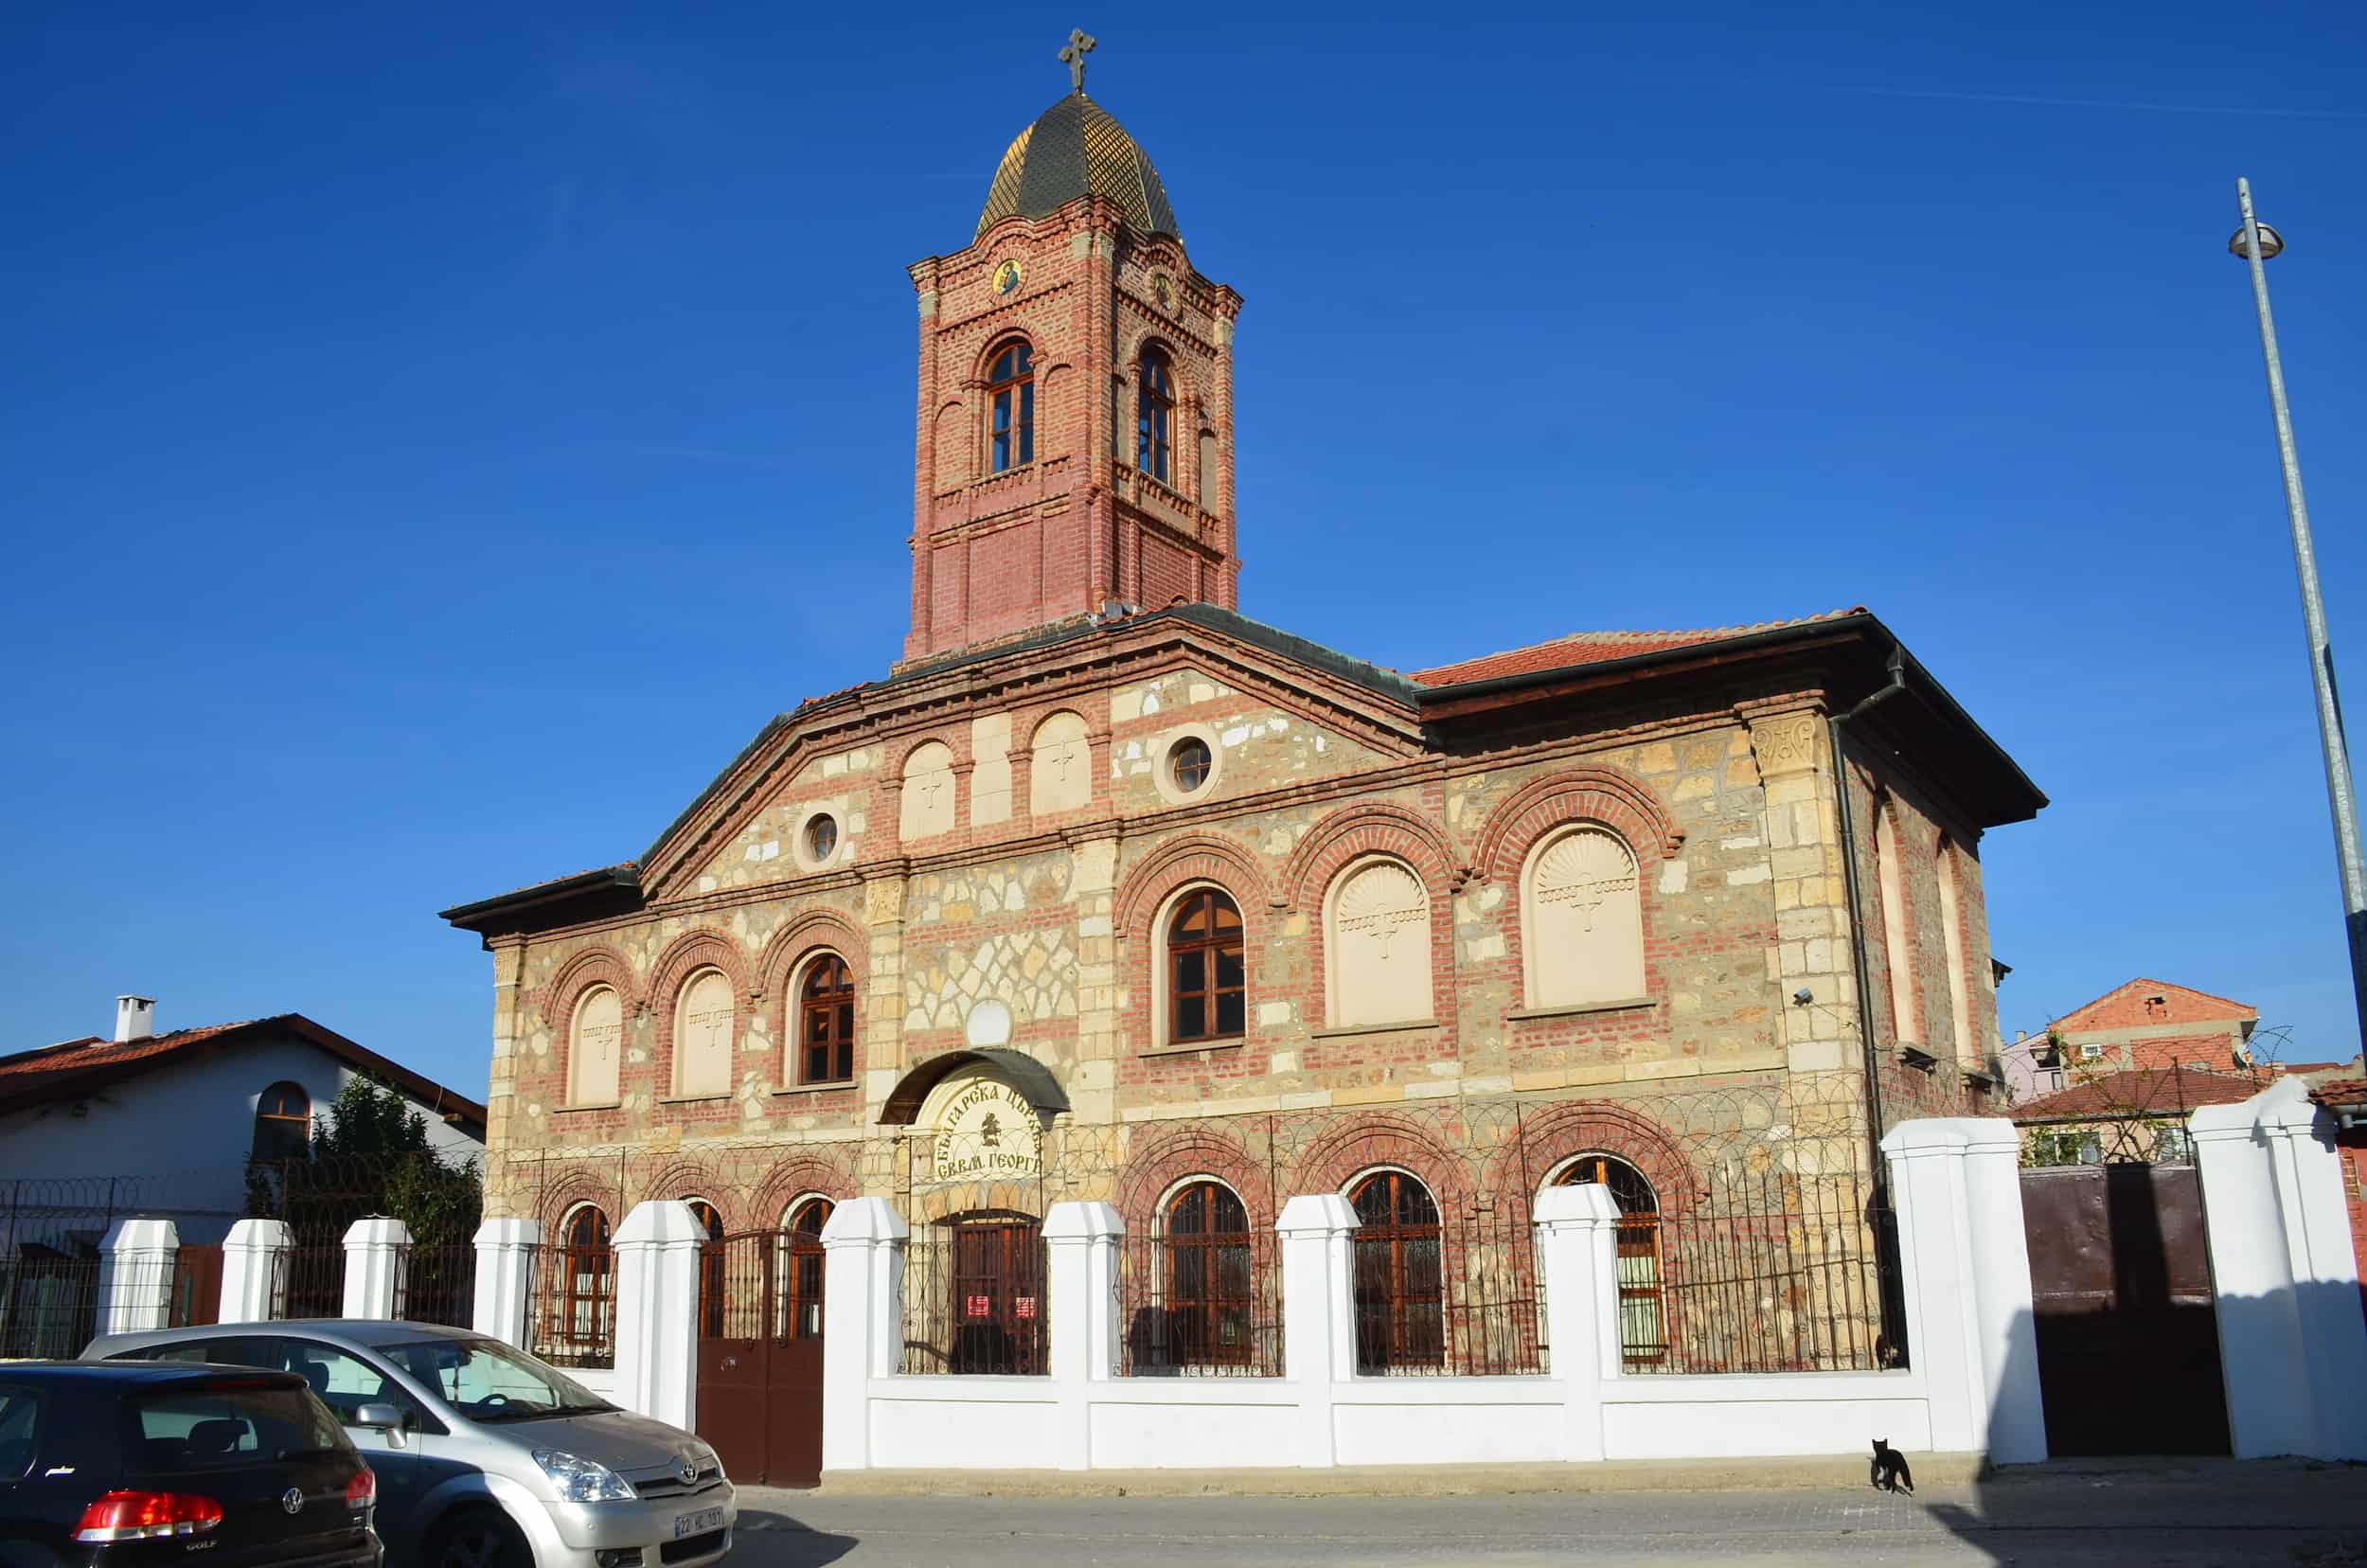 St. George Bulgarian Orthodox Church in Edirne, Turkey